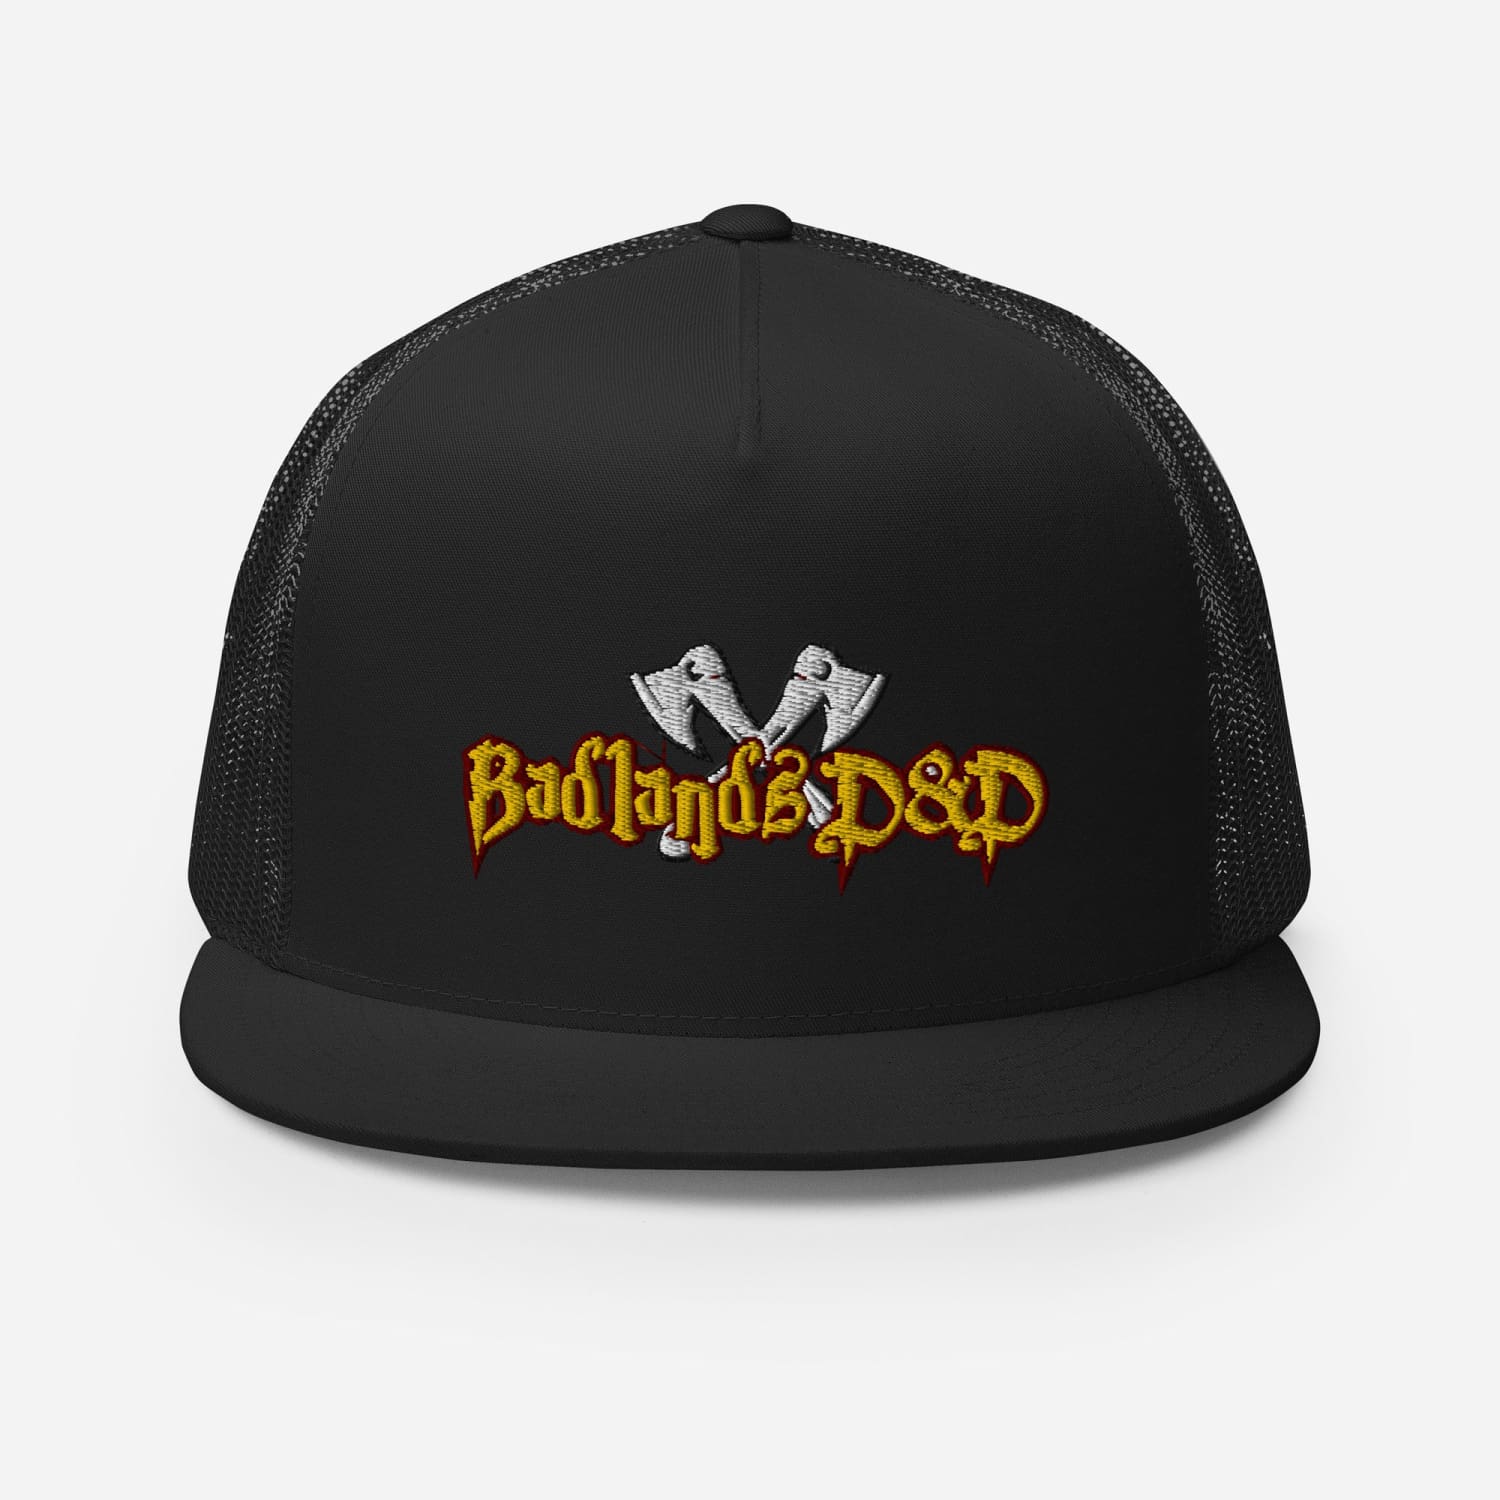 Badlands D&D Logo Classic Trucker Cap - Black